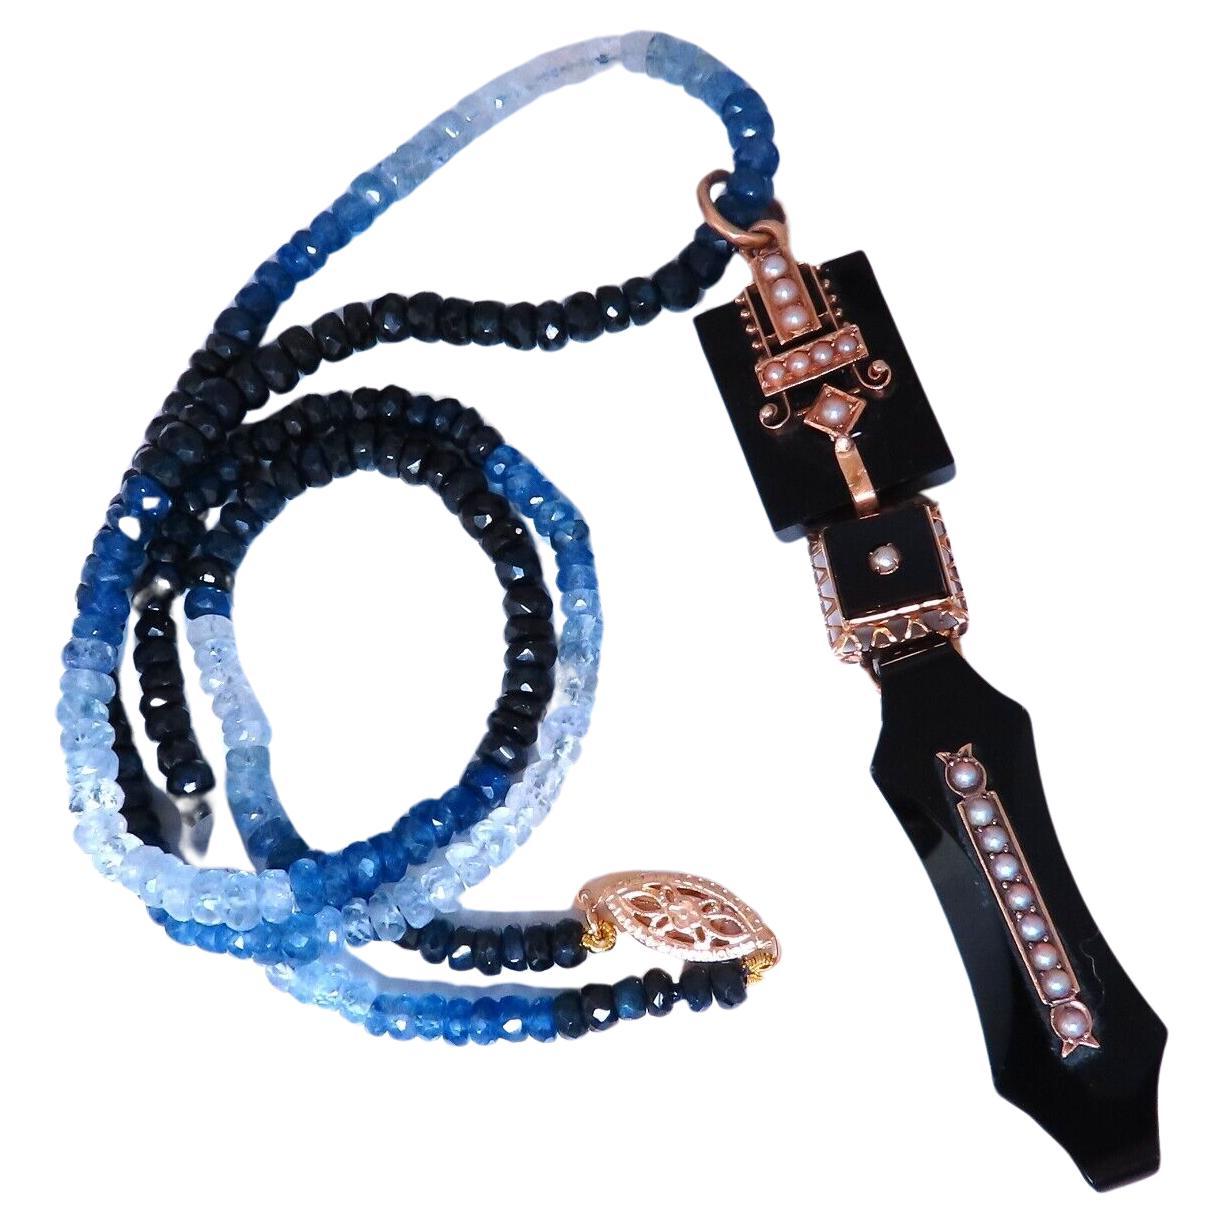 63ct natural Sapphire bead necklace 14 karat clasp Antique Onyx Drop Pendant For Sale